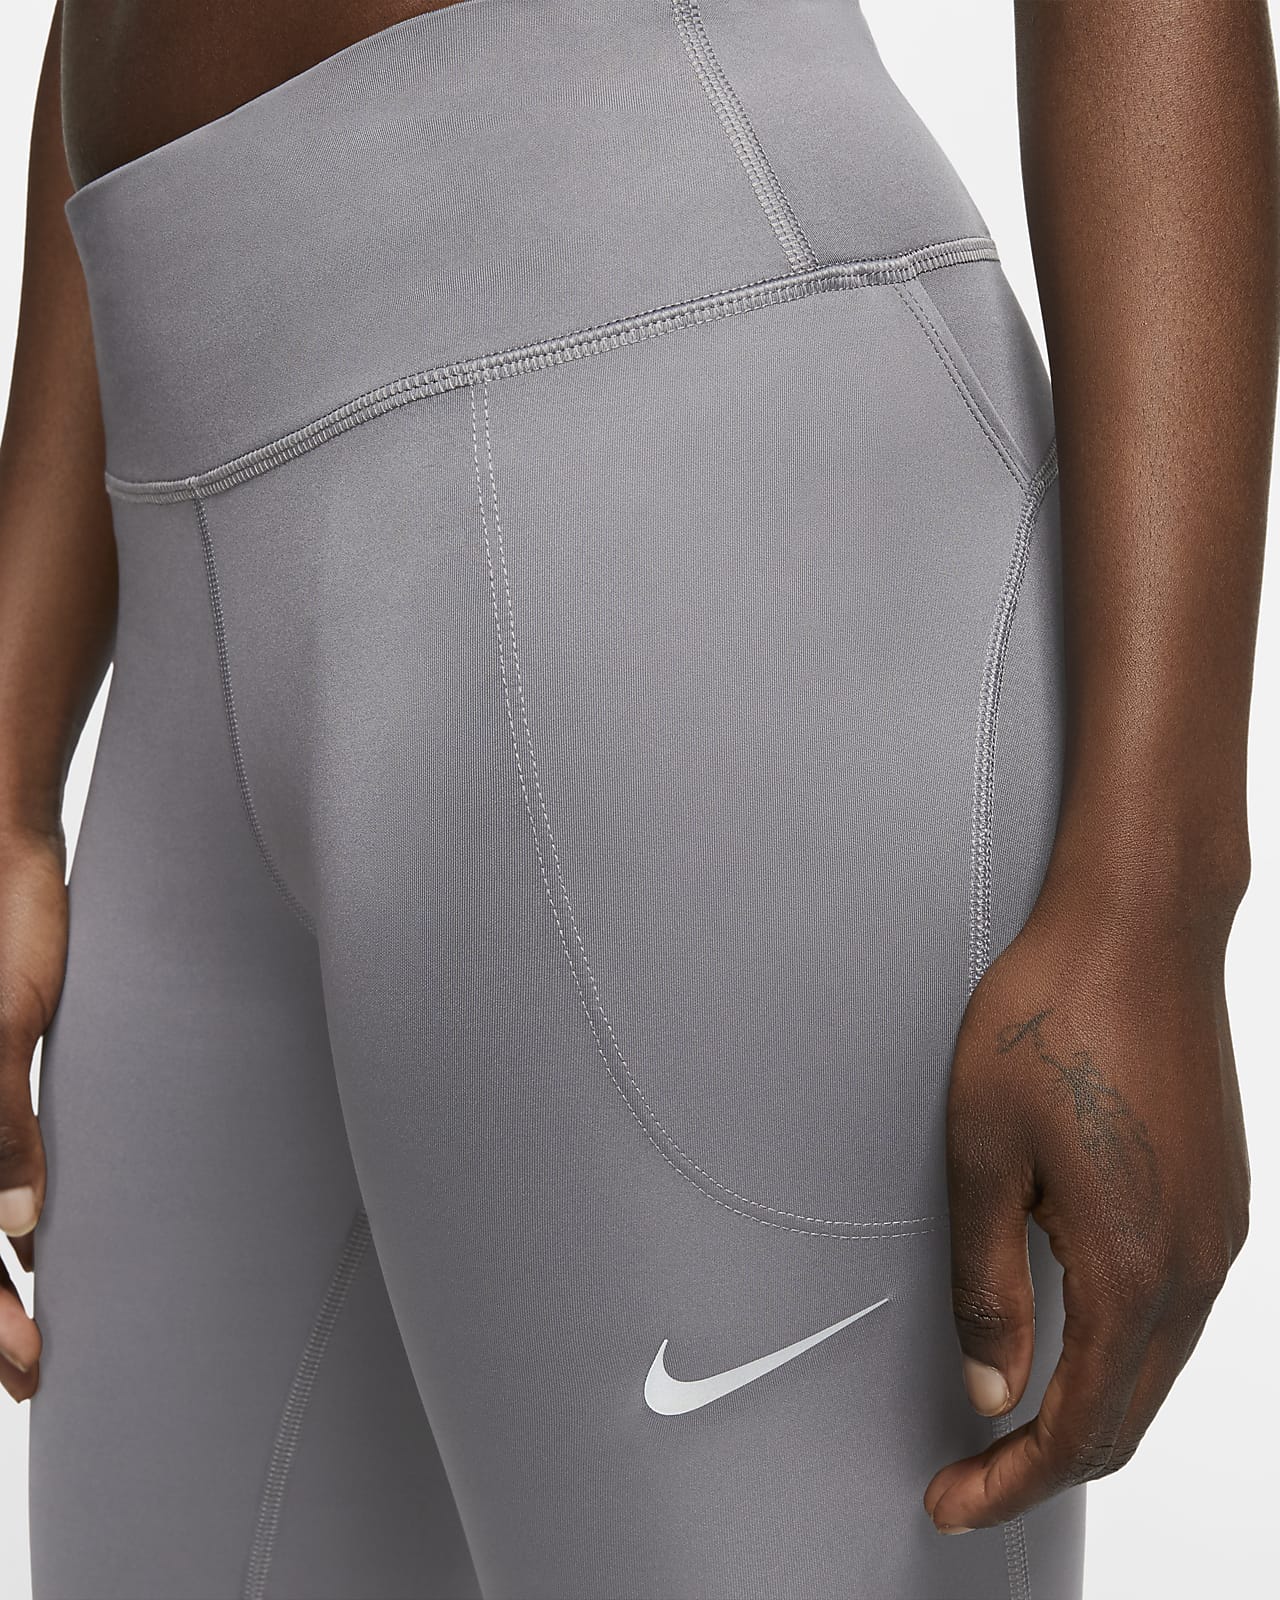 Nike Training Pants XL Mid Rise 7/8 Sparkle Leggings Sports